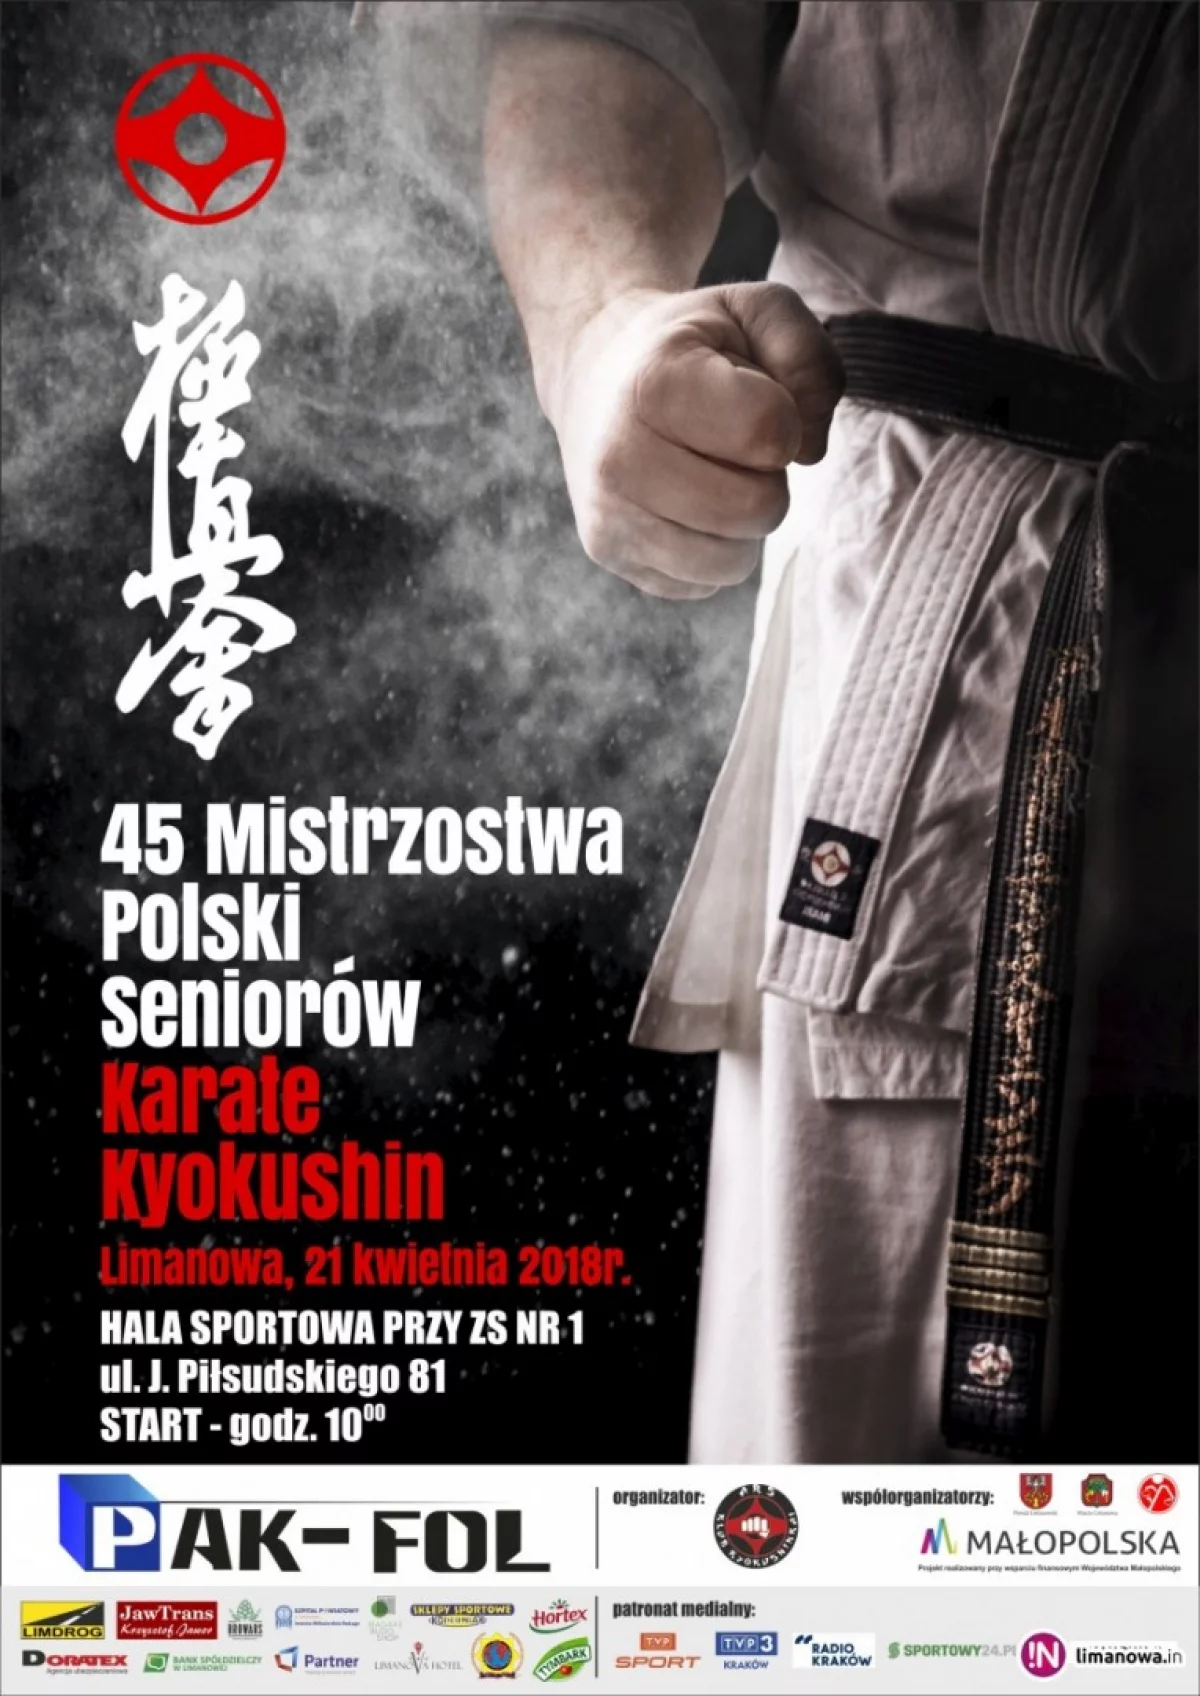 Mistrzostwa Polski Seniorów Karate Kyokushin już w najbliższą sobotę w Limanowej!